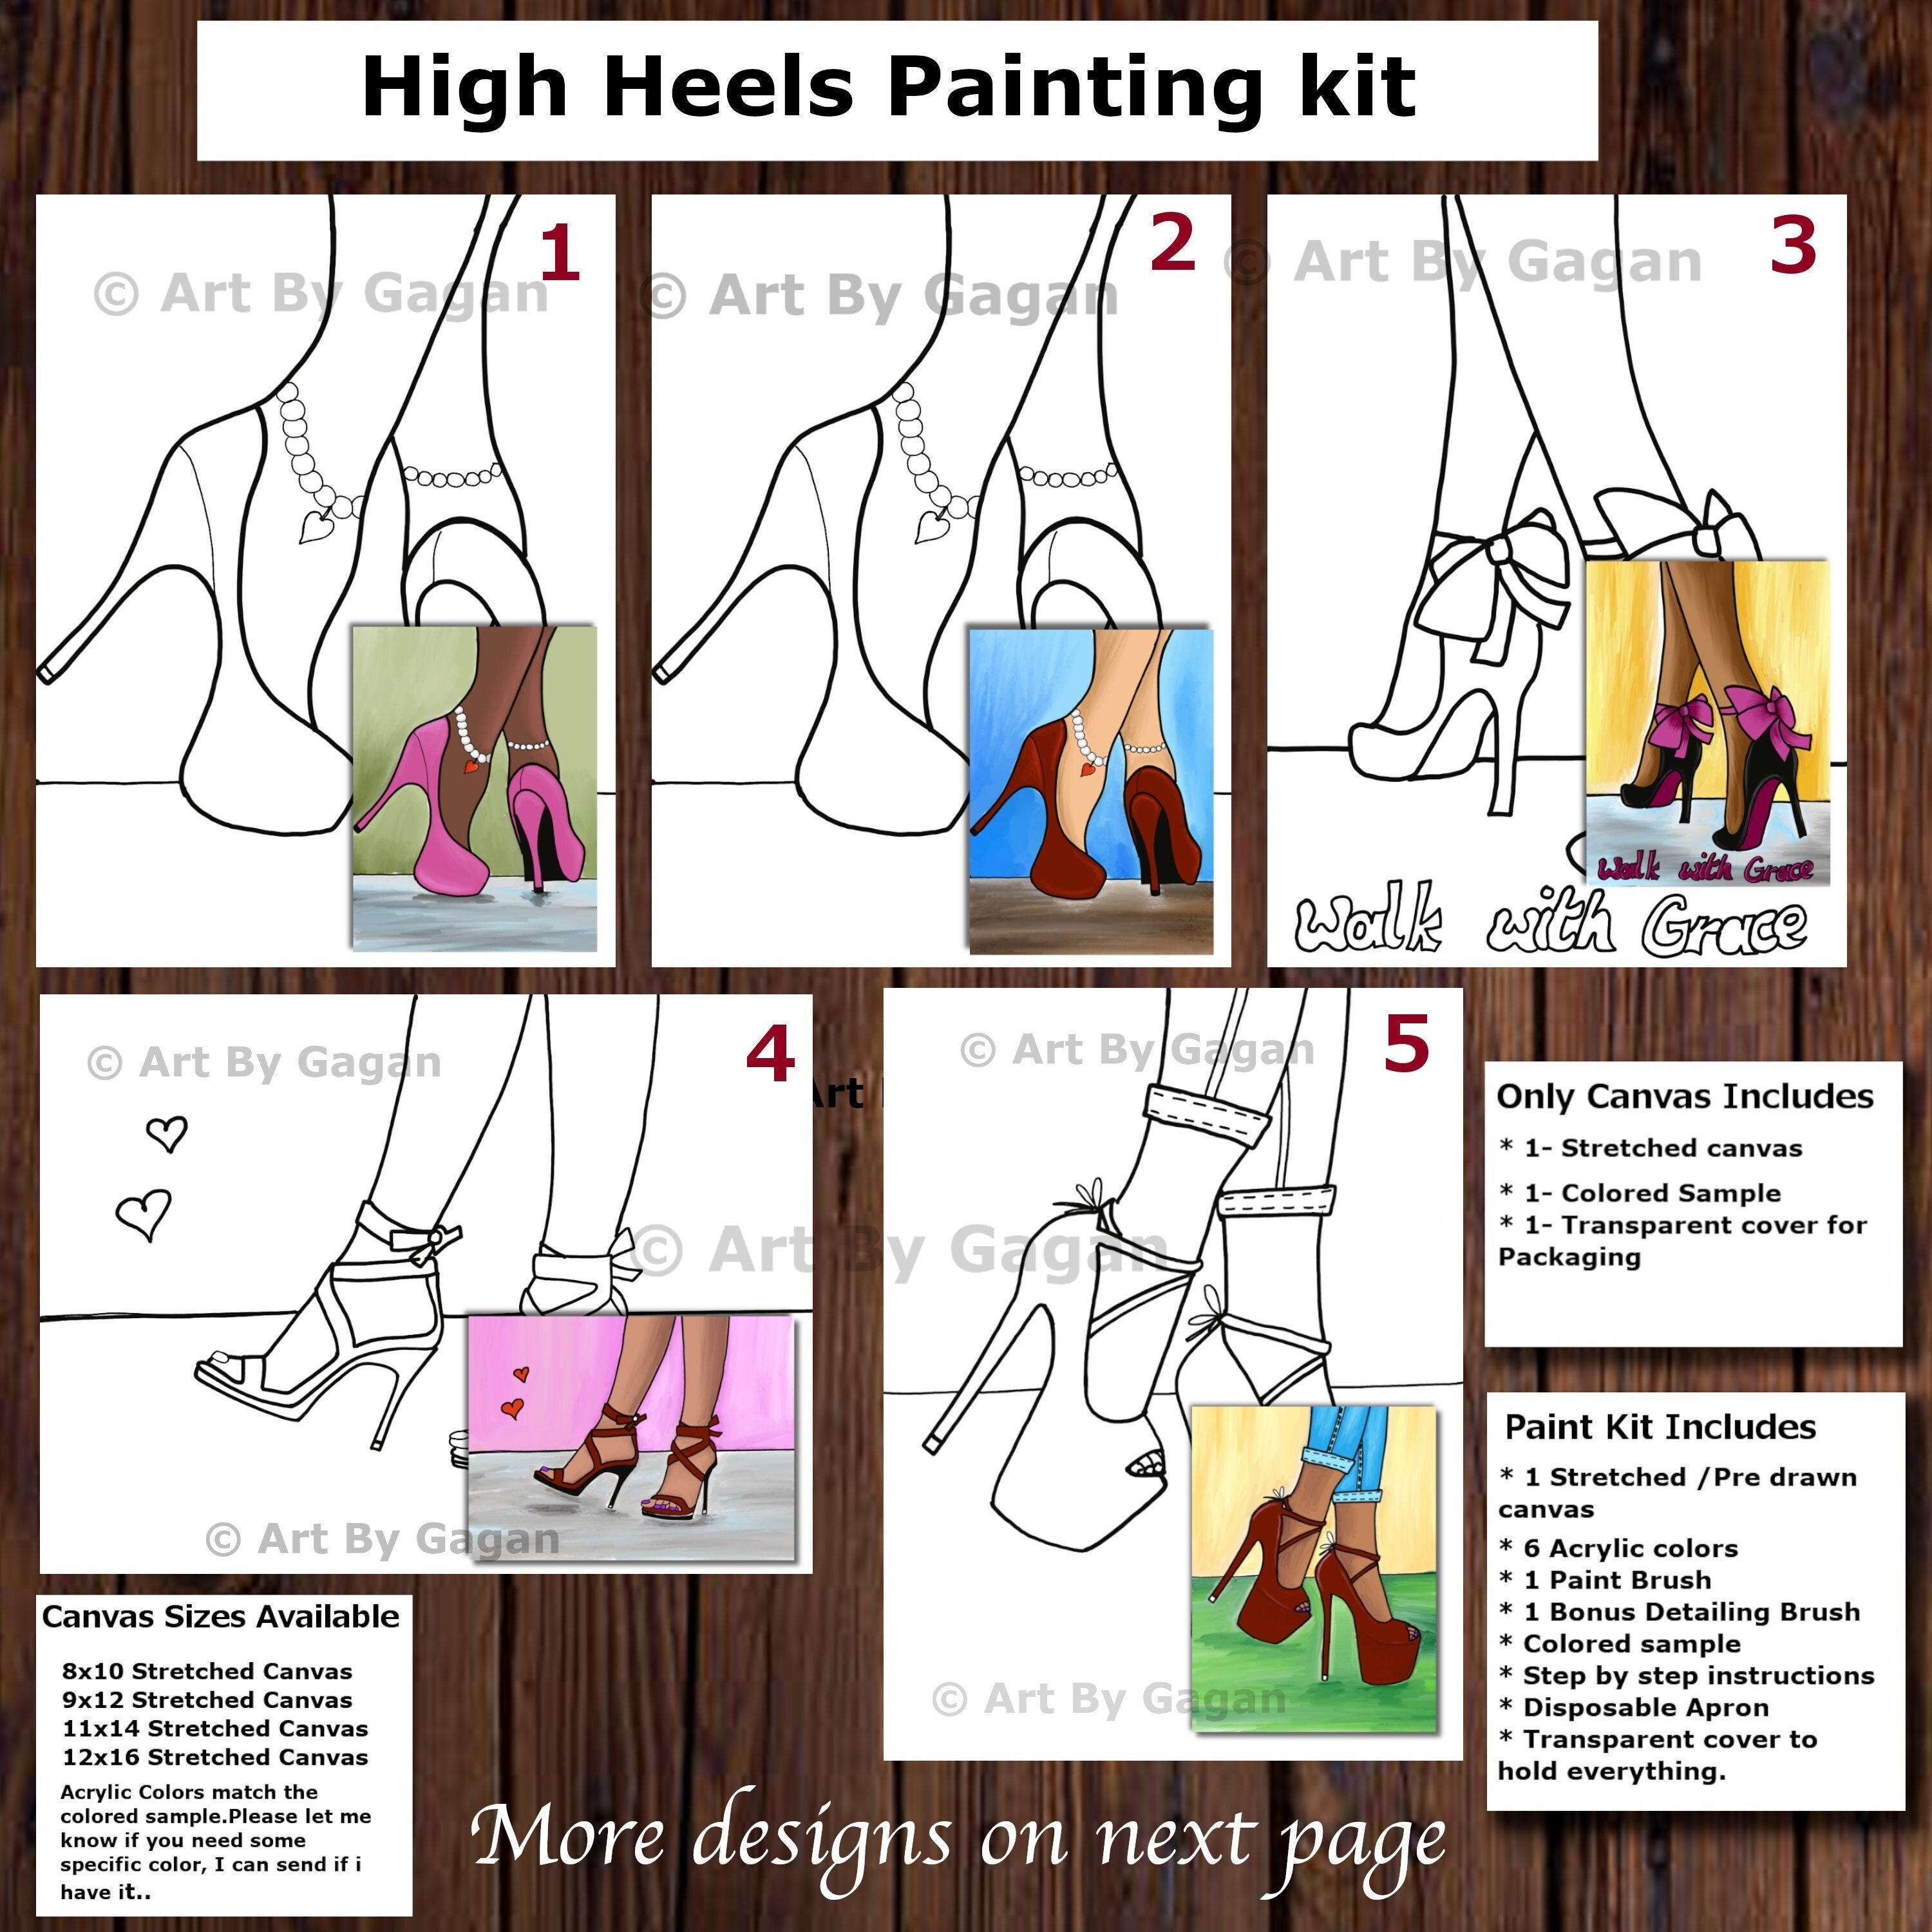 DIY Paint Party Kit - 11x14 Canvas - Walk by Faith